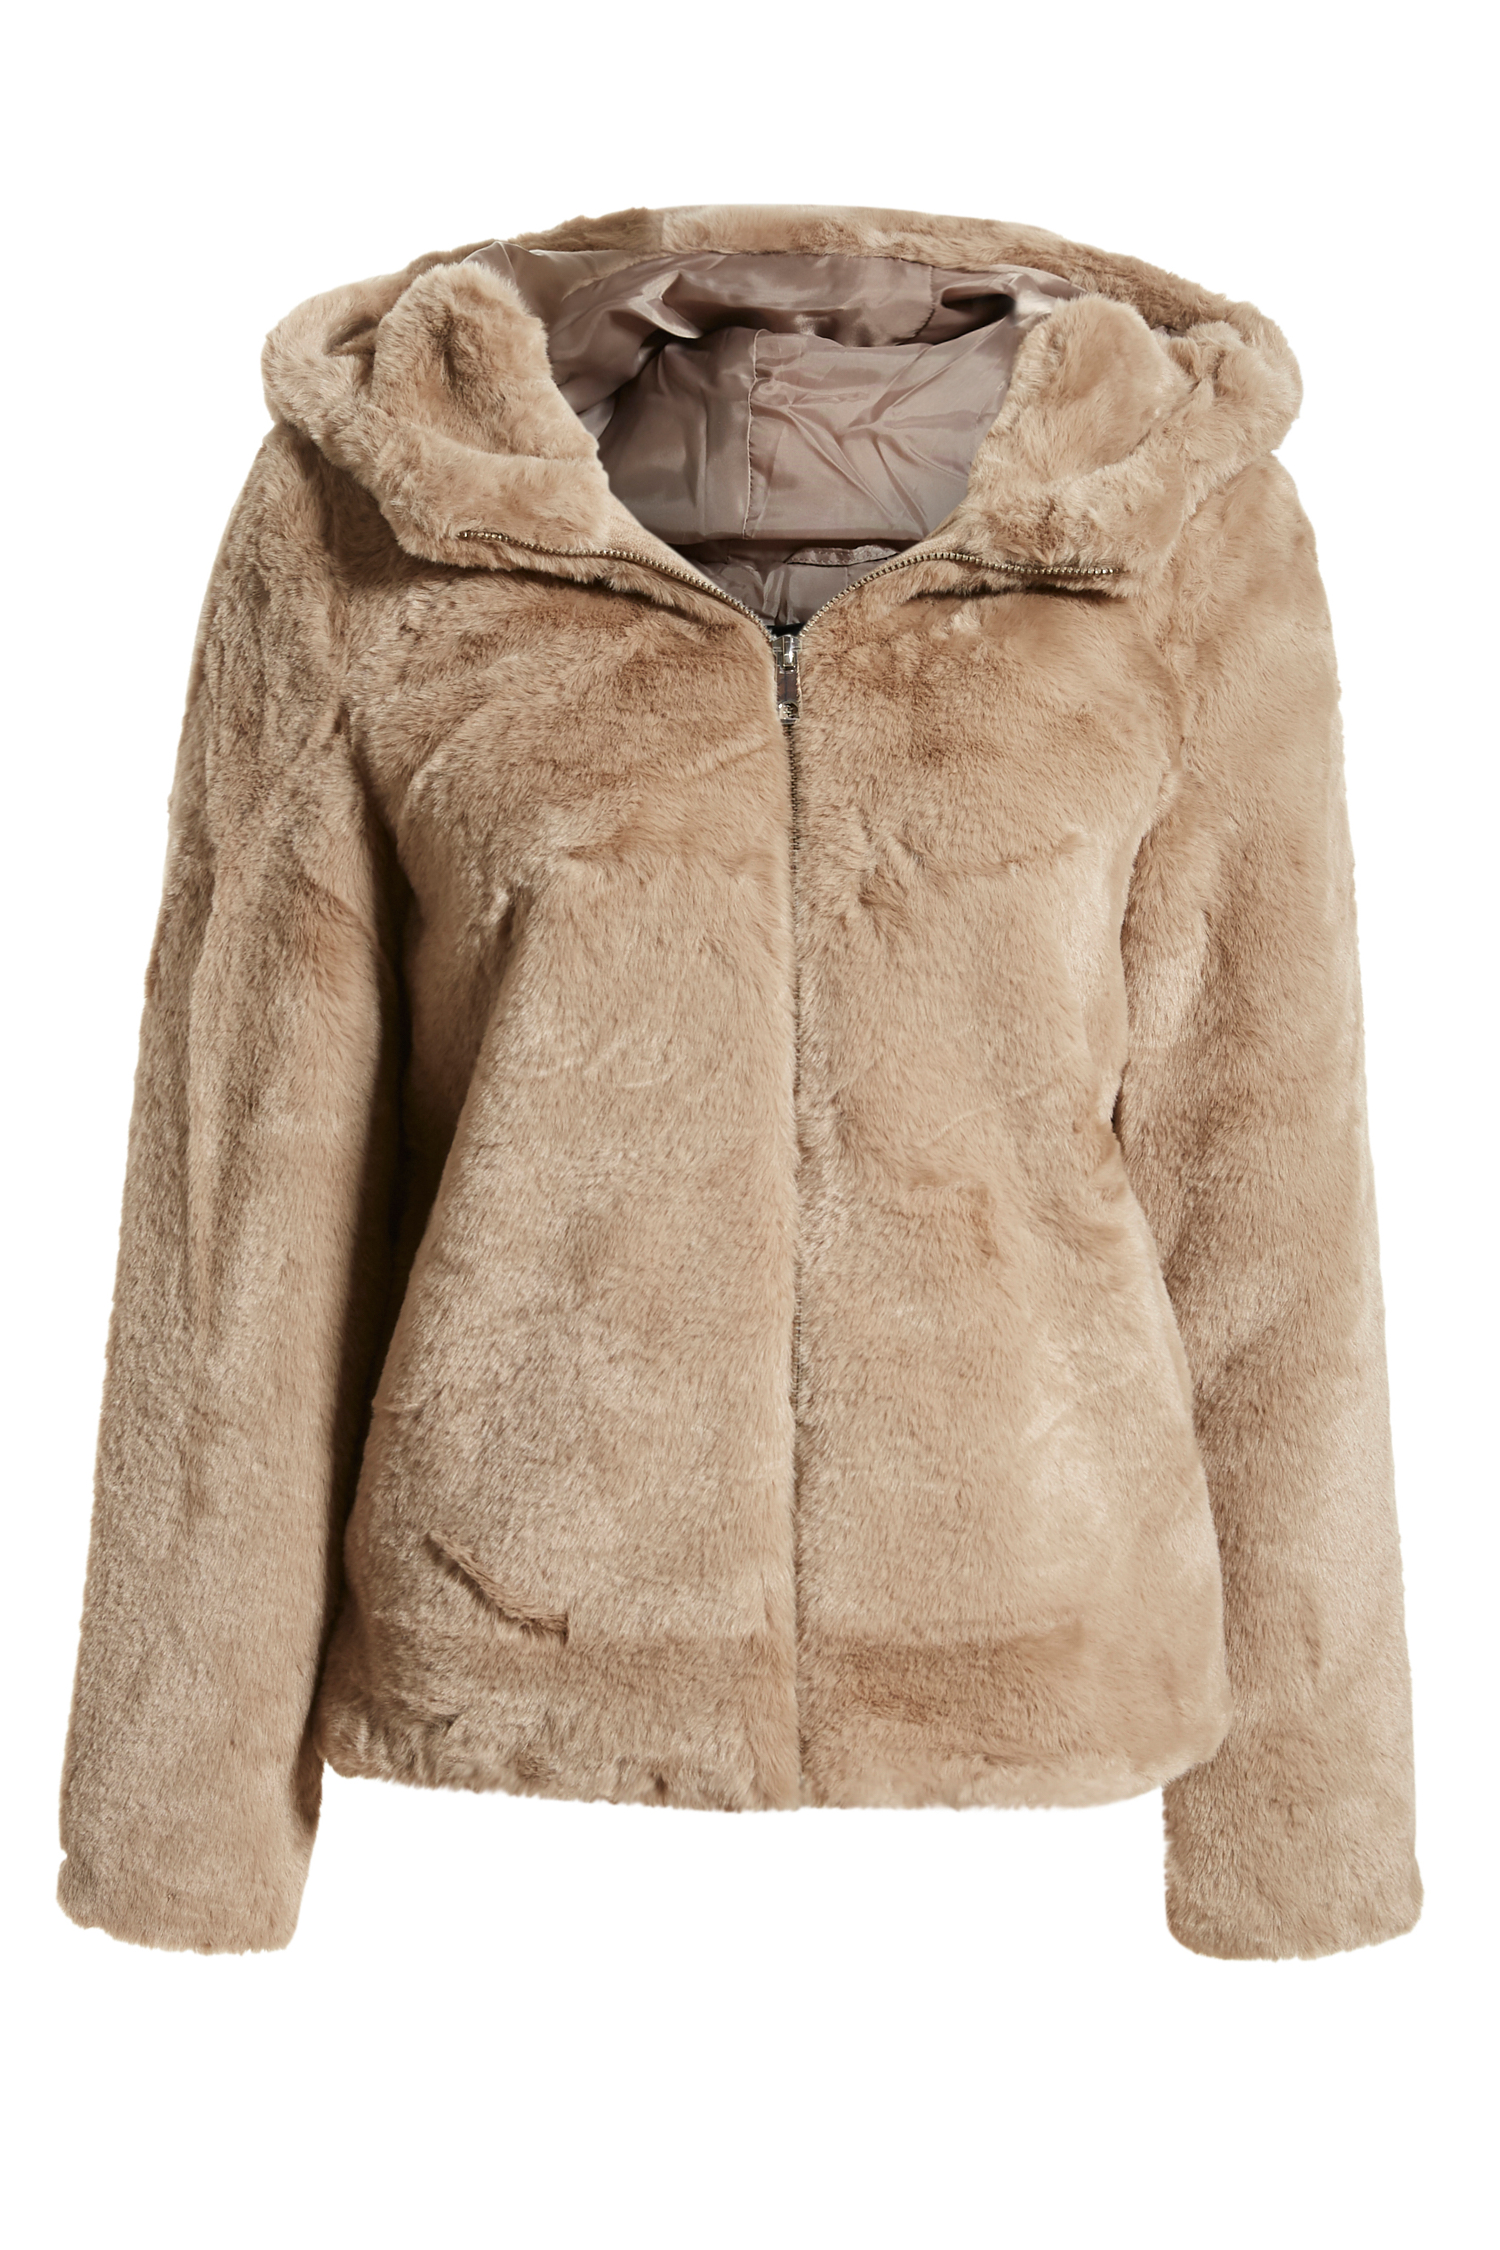 Belofte lekken Wanten Vero Moda Faux Fur Hooded Jacket in Taupe XS - L | DAILYLOOK